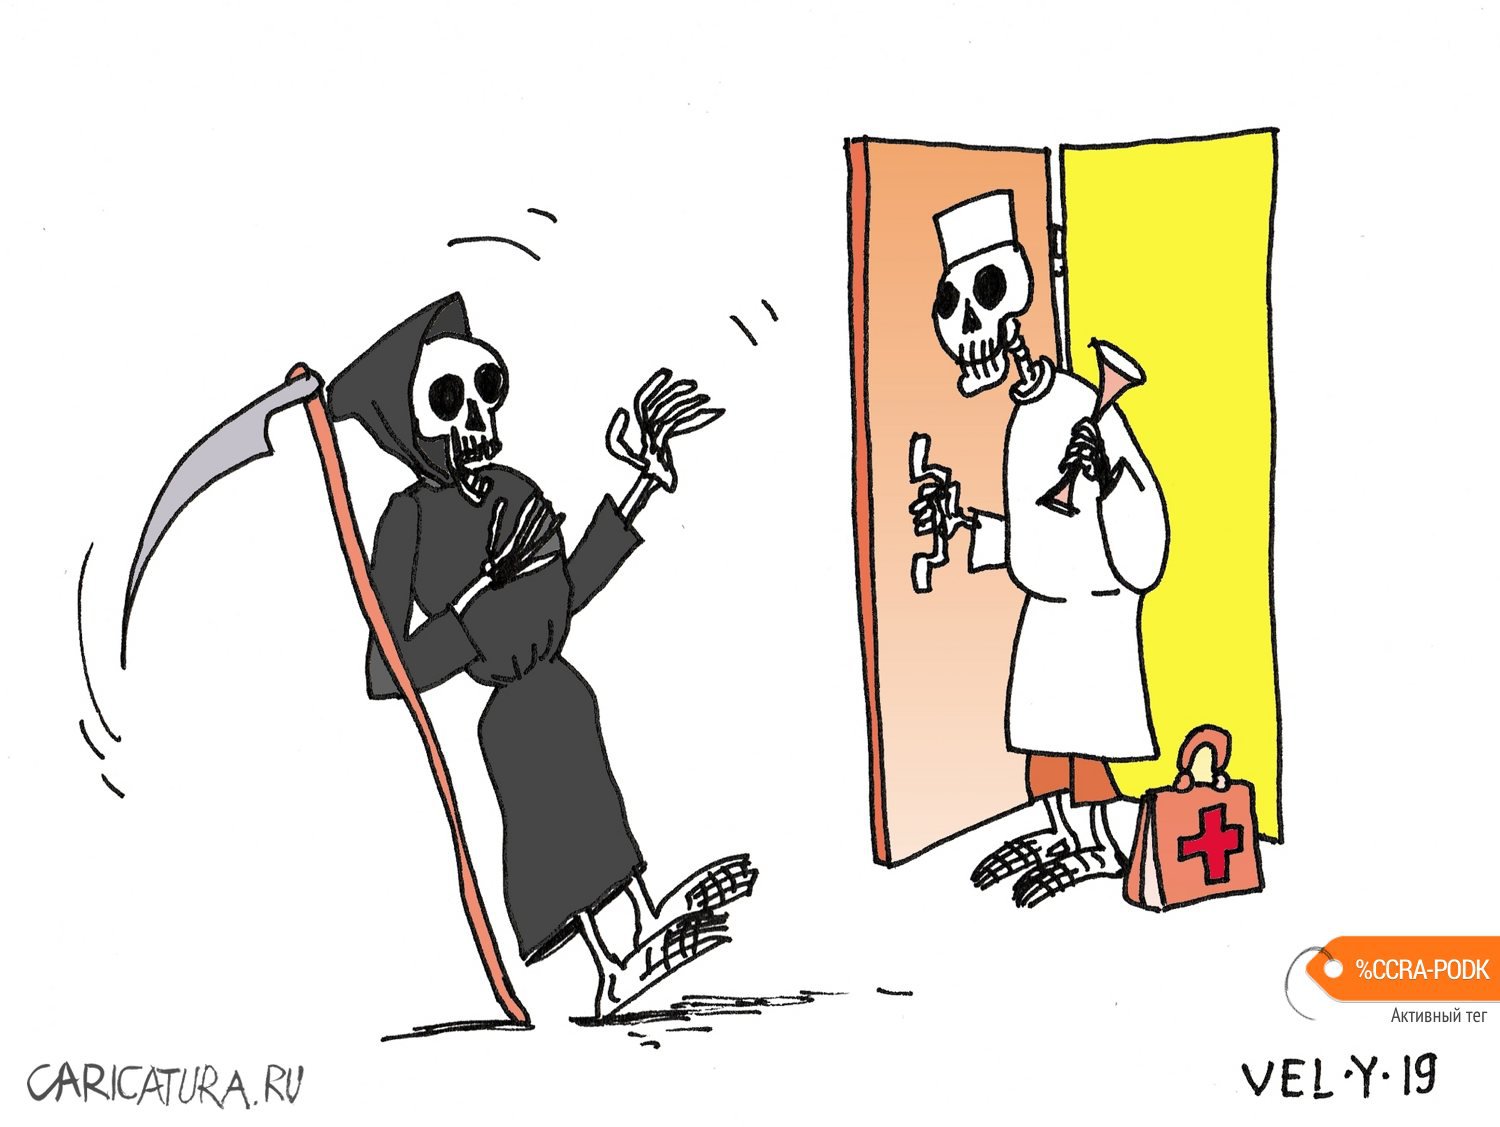 Карикатура "Смерть...", Юрий Величко